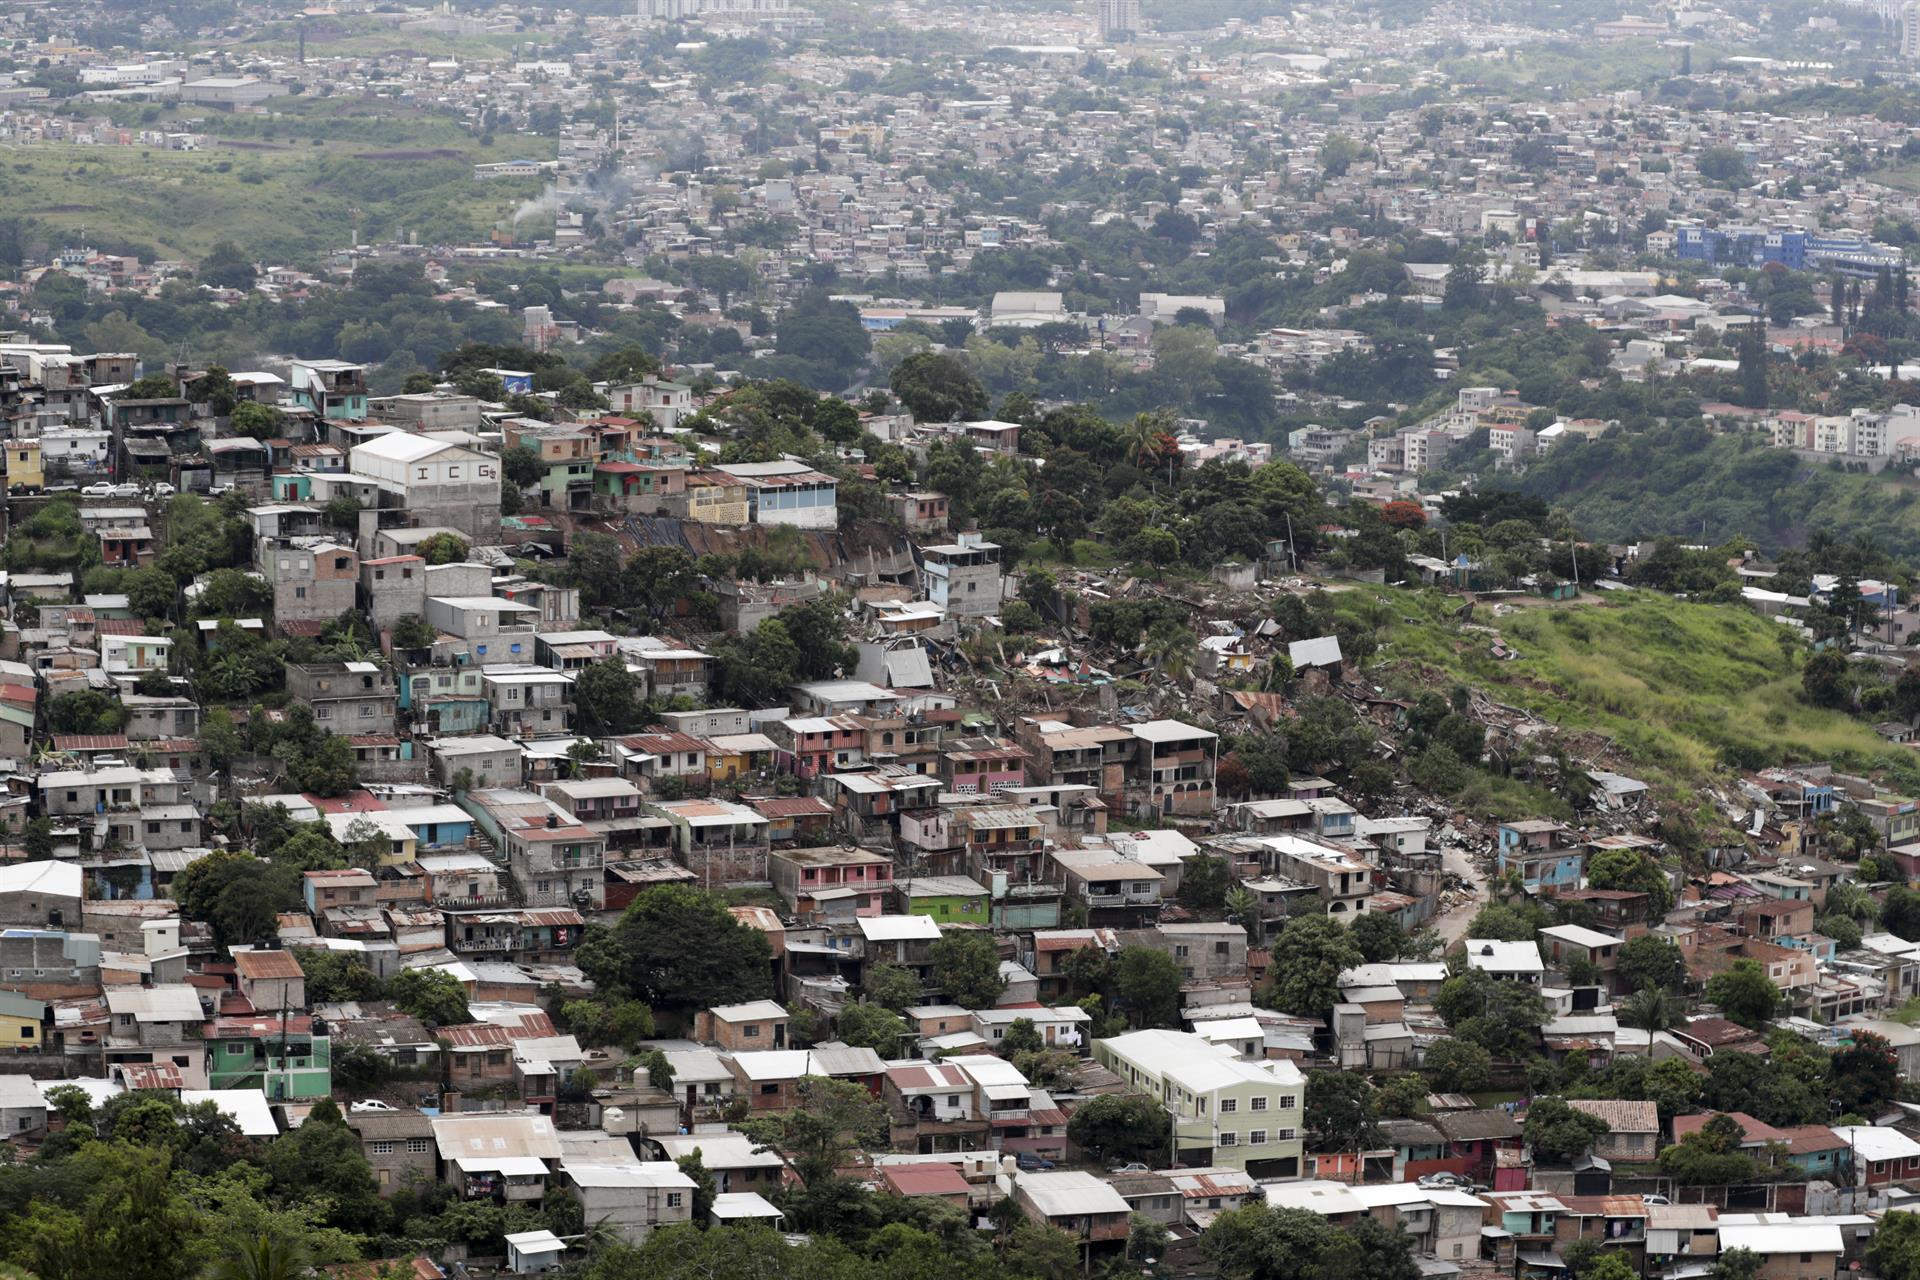 Vista aérea del barrio la Guillen, donde se vieron afectadas decenas de casas tras una falla geológica por las constantes lluvias, hoy, en Tegucigalpa (Honduras).